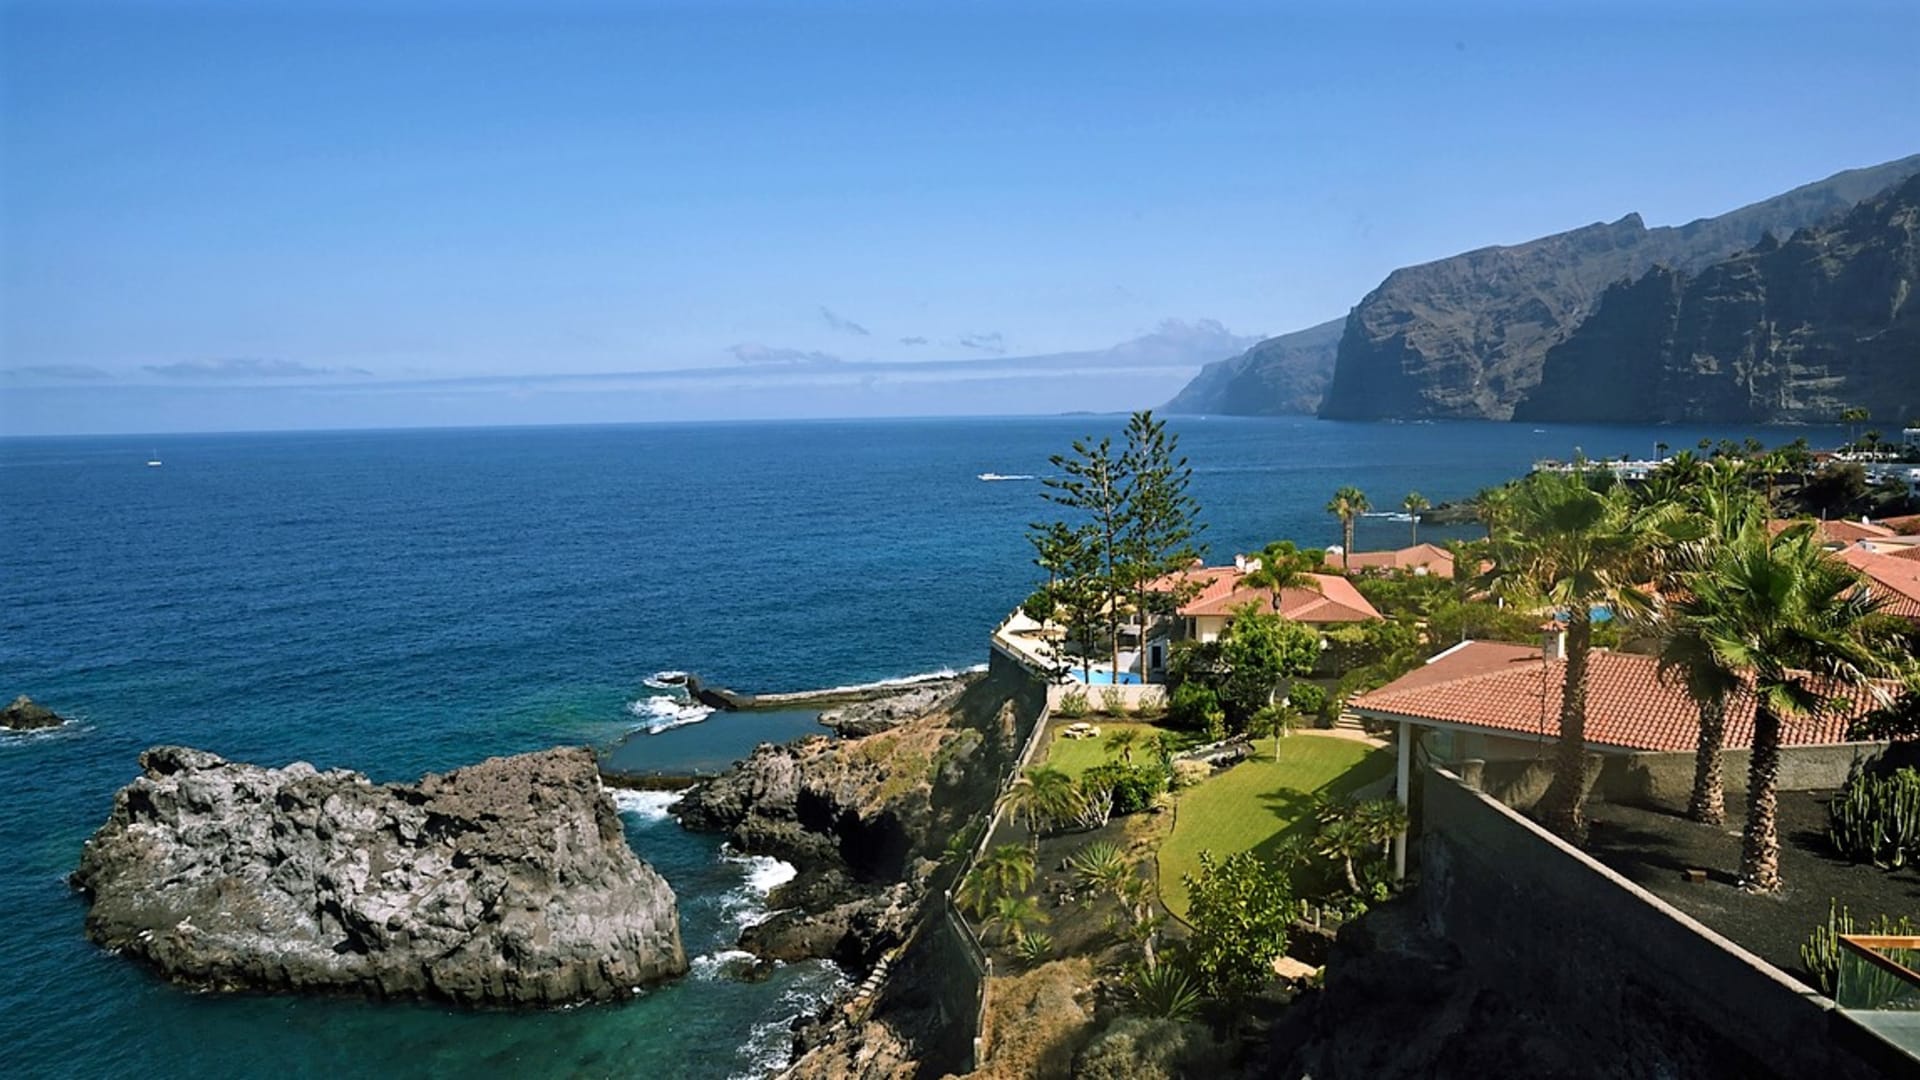 Los Gigantes je oblíbeným turistickým letoviskem na západním pobřeží Tenerife, které se nachází vedle působivého 500 až 800 m vysokého útesu Acantilados de Los Gigantes